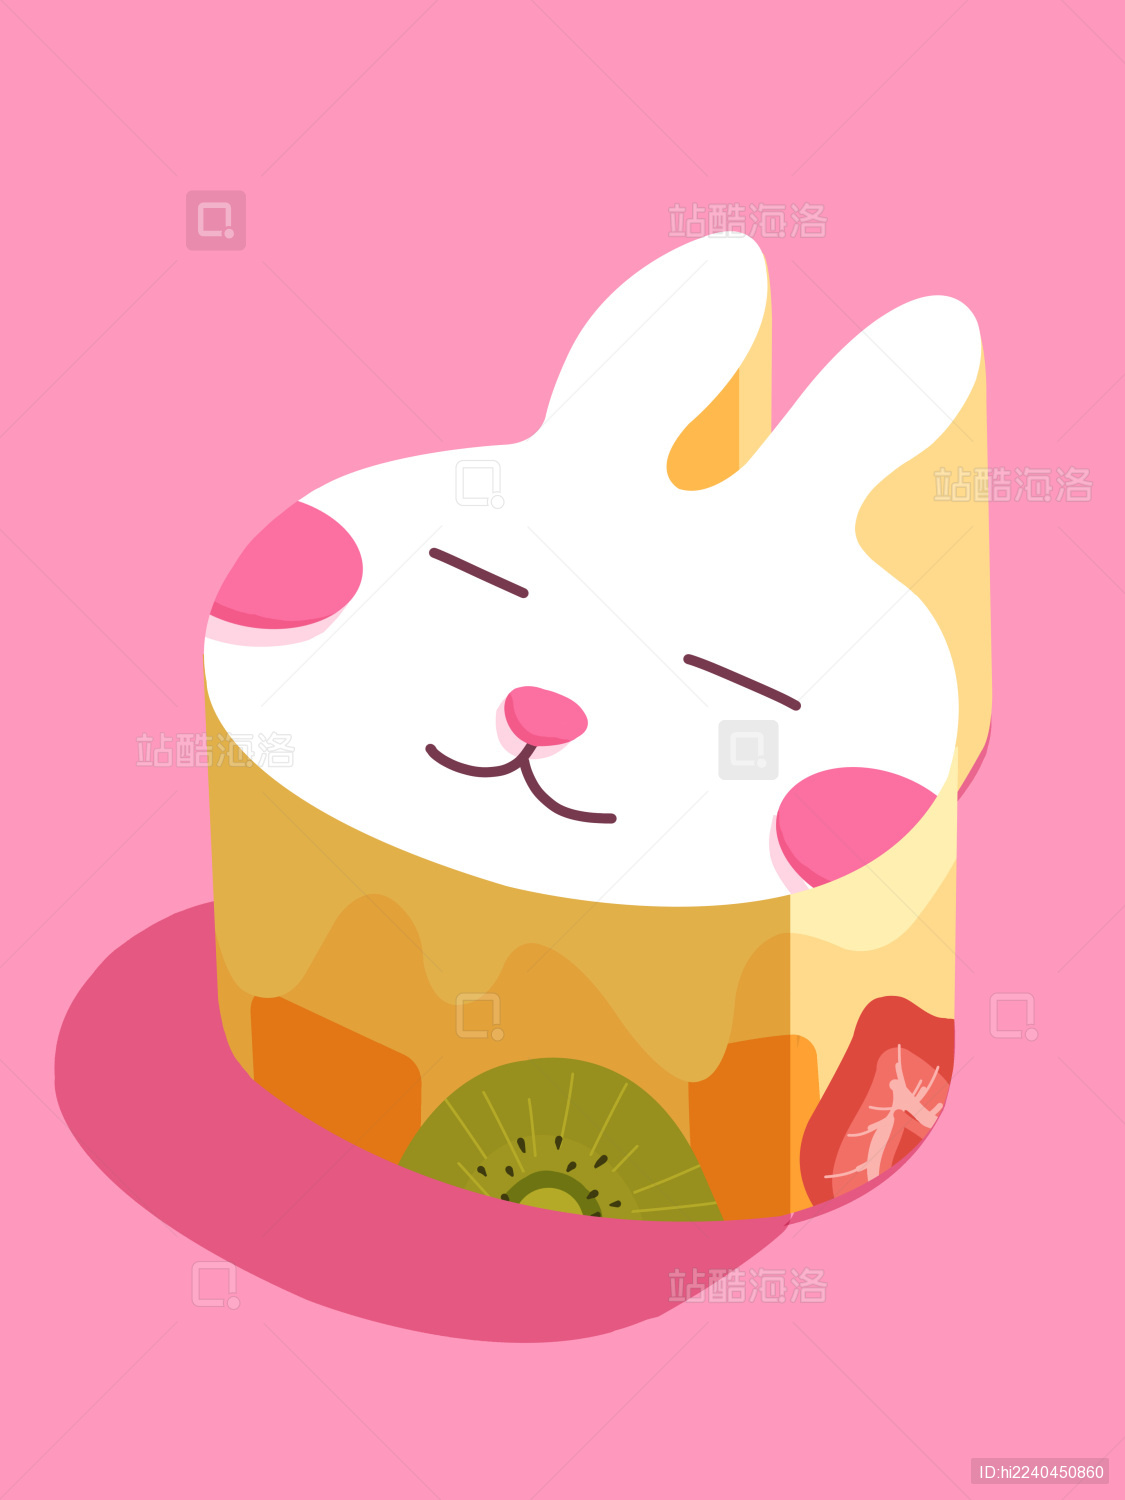 【数字蛋糕1周岁兔子蛋糕】北京生日蛋糕预订 儿童蛋糕 卡通蛋糕